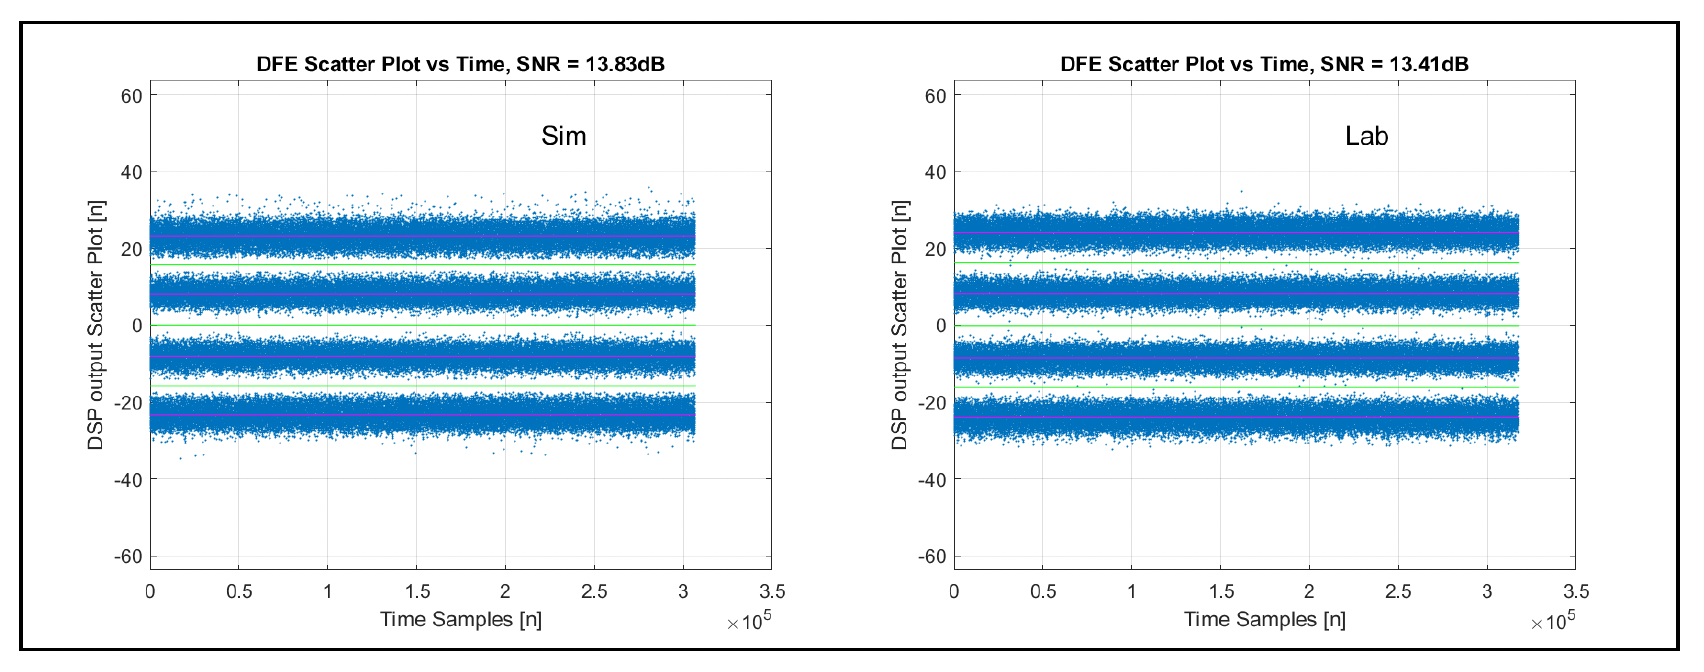 シミュレーションとシリコン DFE 出力の散布図 1.6Tbps 時代